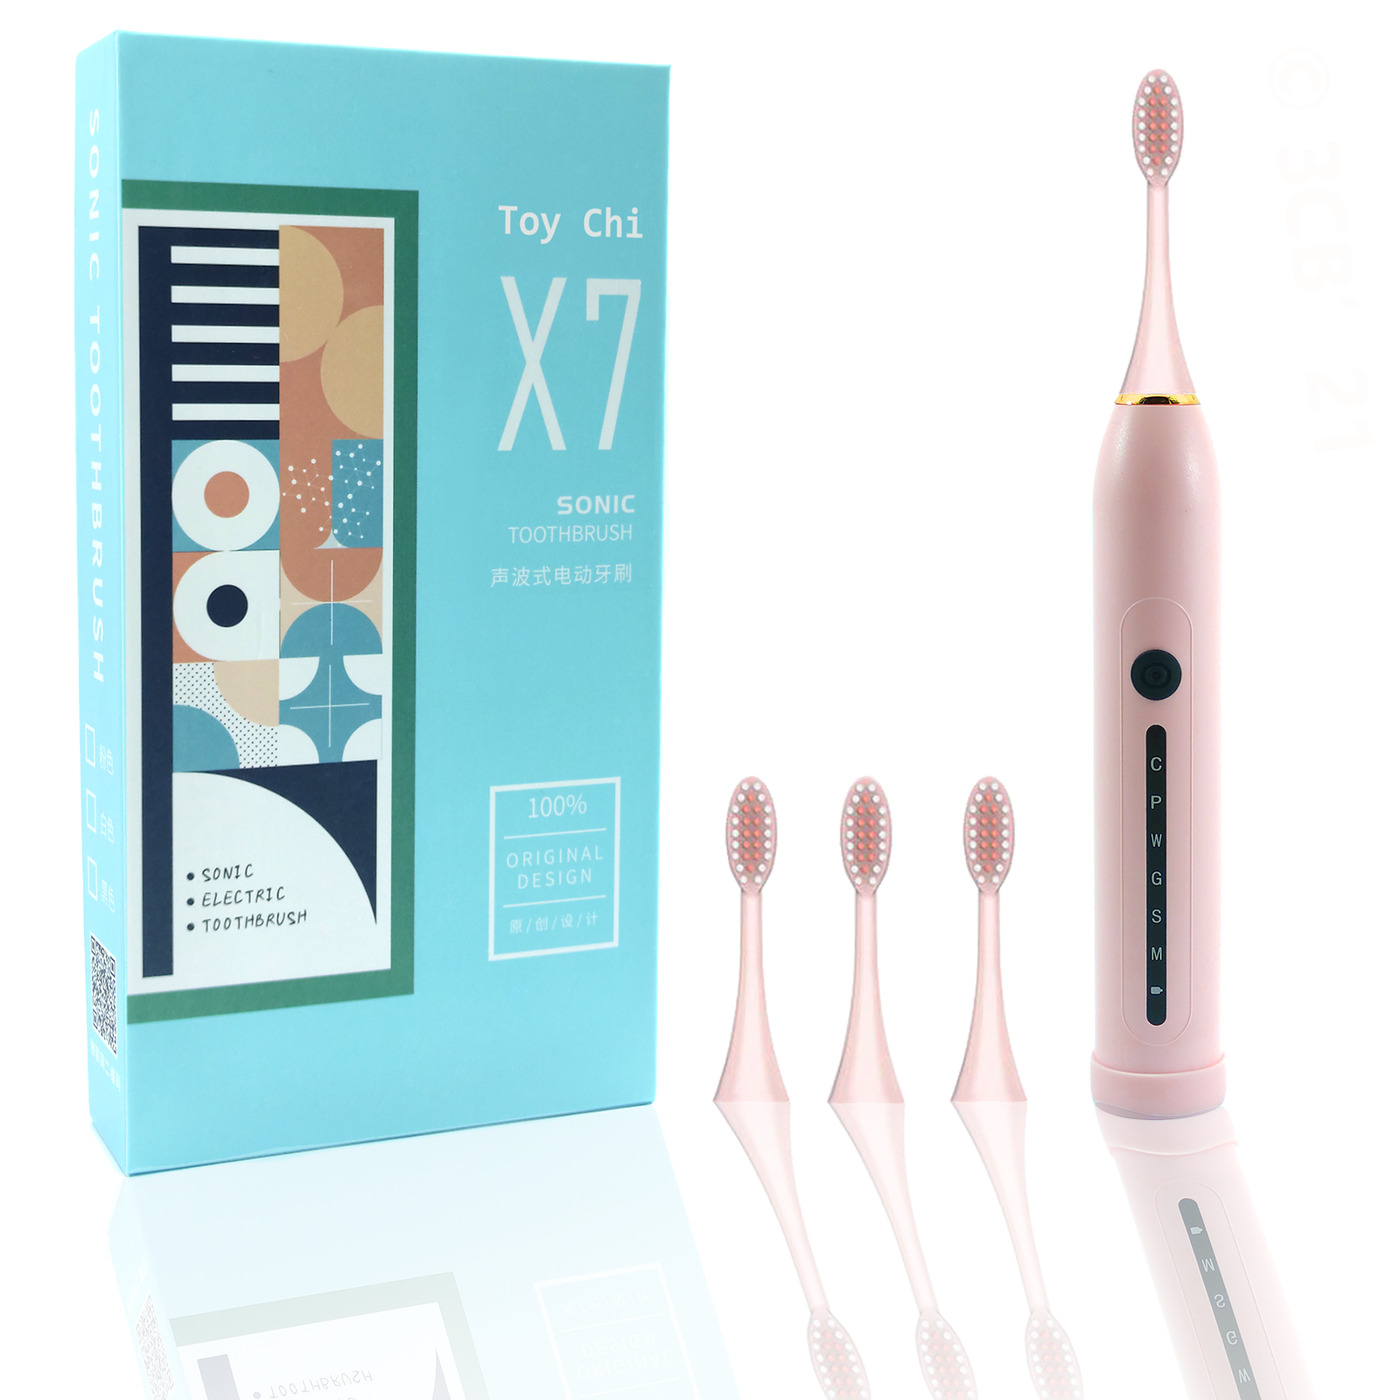 Электрическая зубная щетка ультразвуковая Toy Chi X7 SONIC Toothbrush, розовая ручная зубная щетка нейлон мягкая тонкая сверхтонкая щетина зубные щетки очистка полости 12 штук